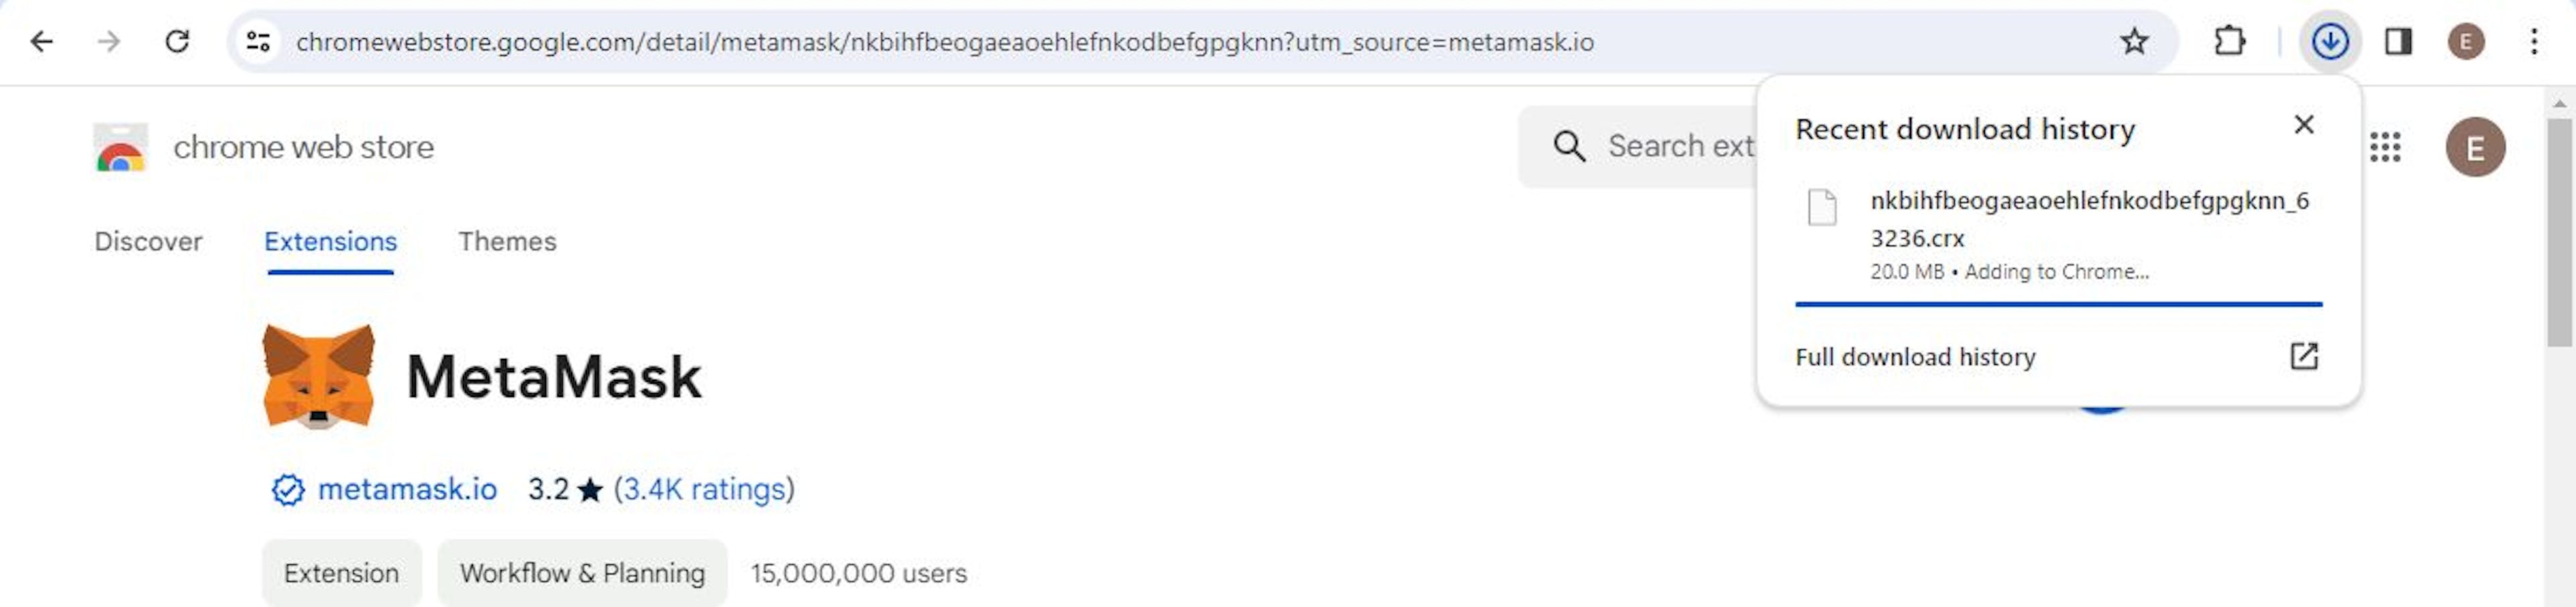 Imagem mostrando o processo de instalação do MetaMask no Chrome.